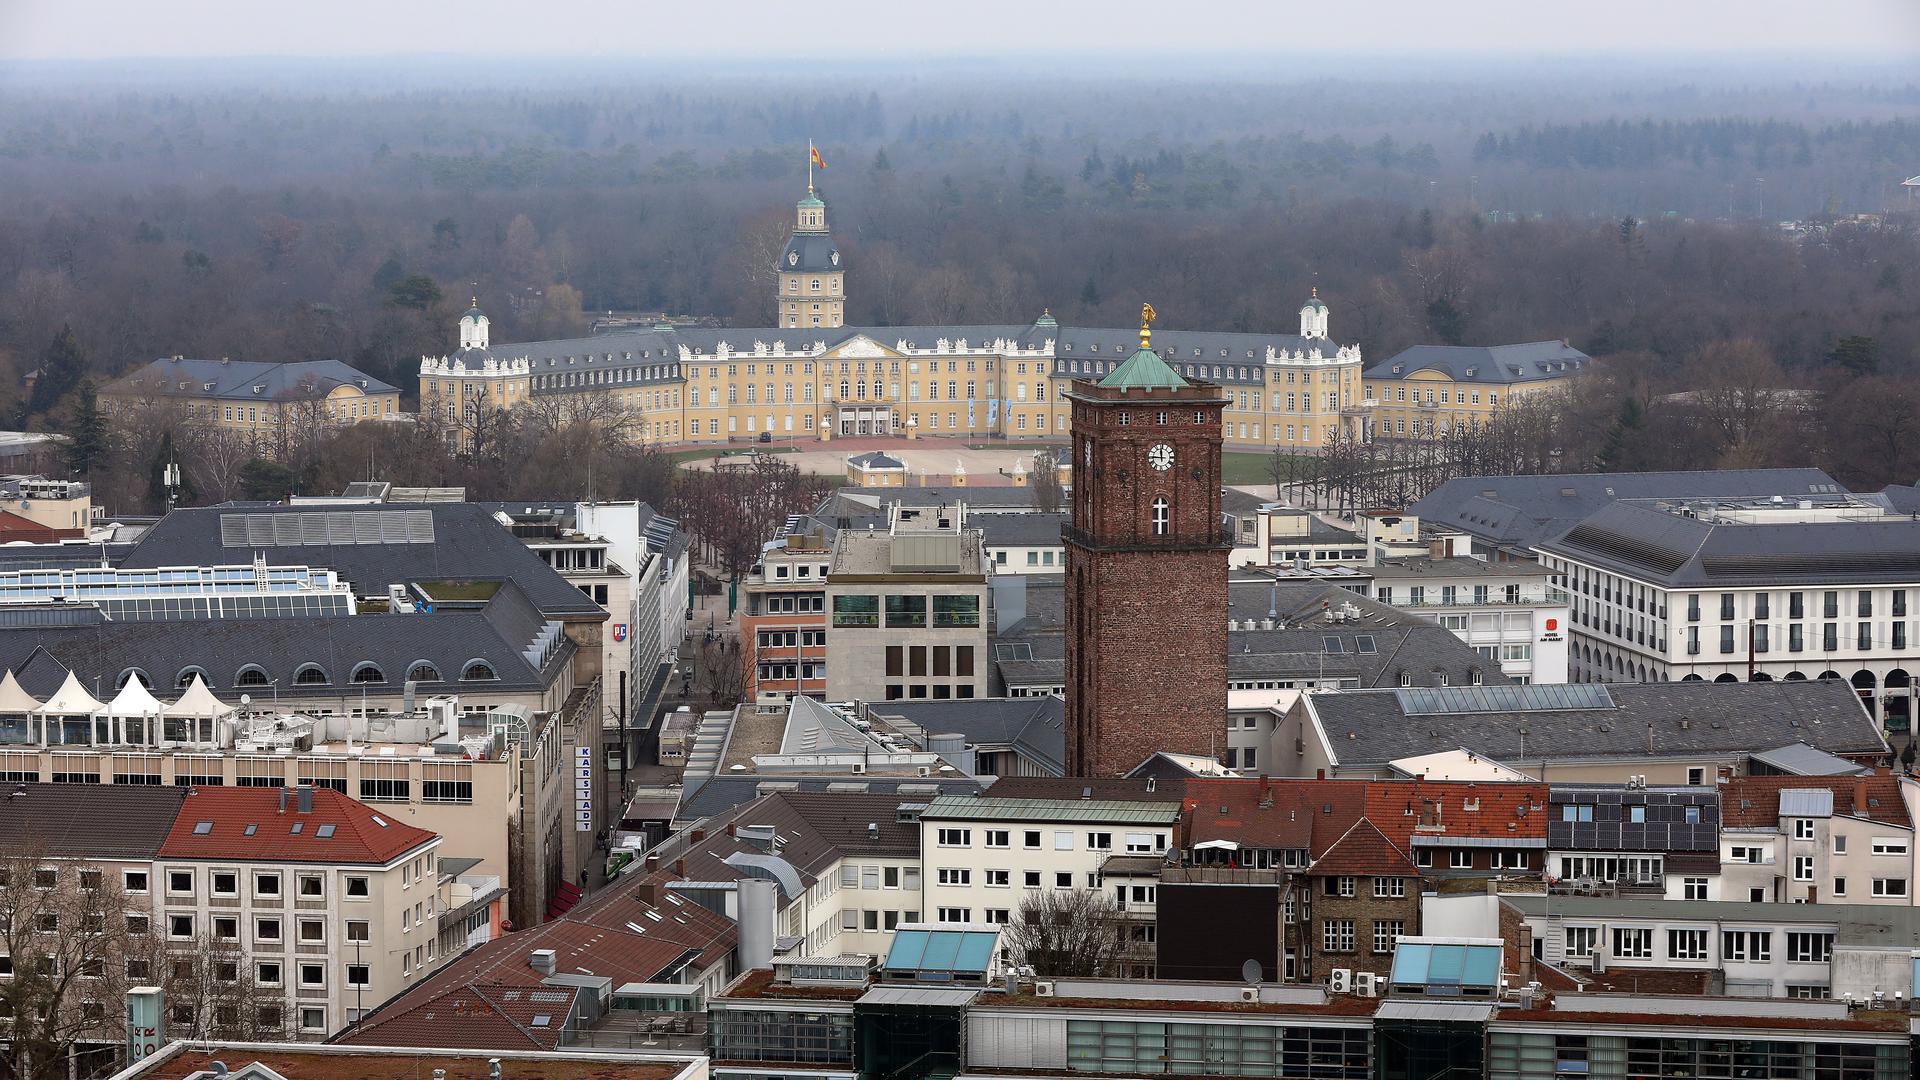 Das Herz der Region: Die Karlsruher Innenstadt kann künftig nur pulsieren, wenn die Stadtlandschaft den Veränderungen durch Klimakrise und Pandemie, durch Digitalisierung und Mobilitätswandel angepasst wird.